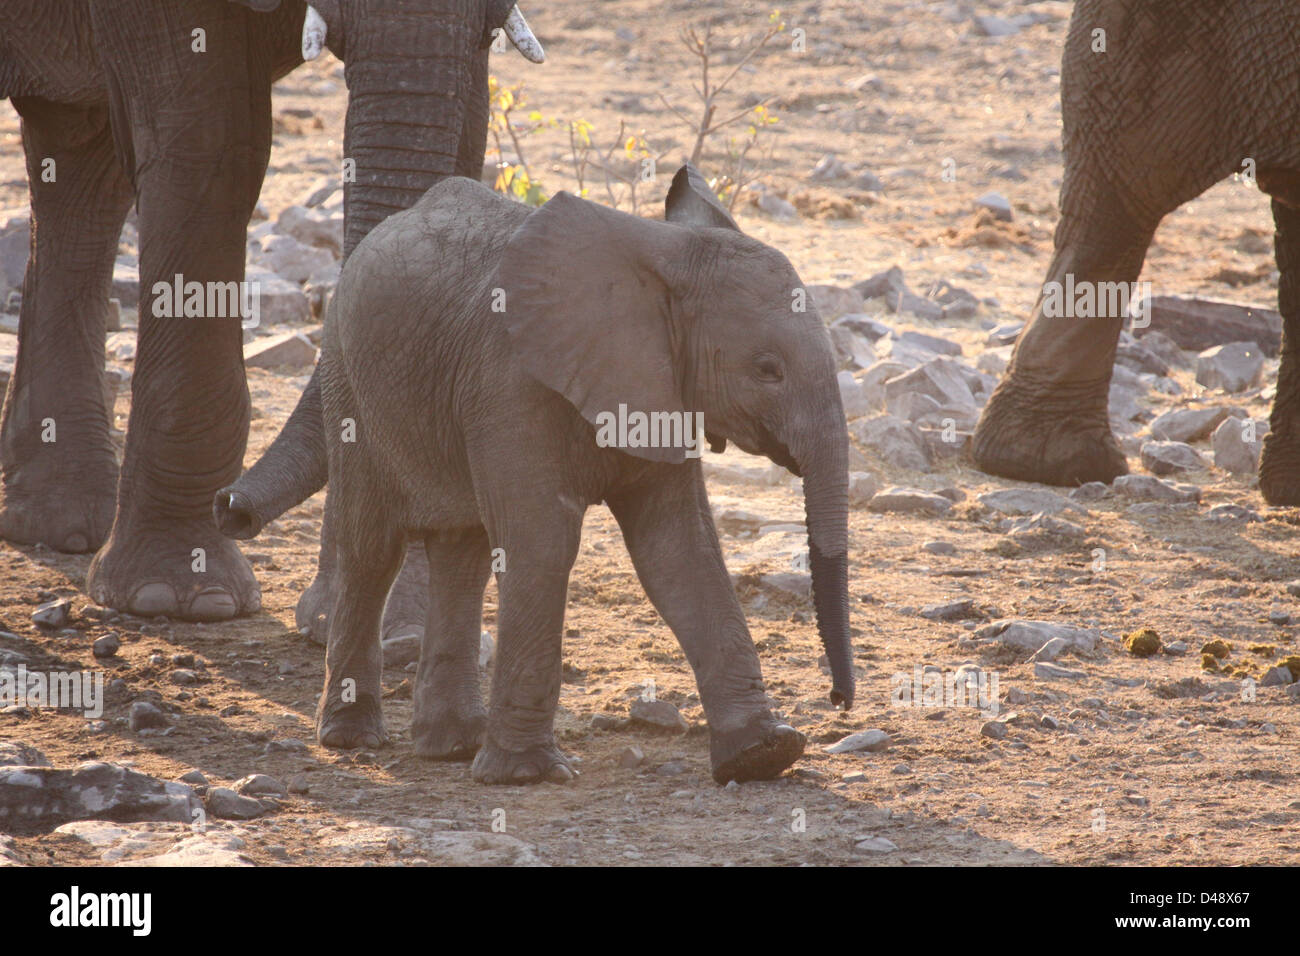 Baby elephant at waterhole, Etosha National Park, Namibia, Africa Stock Photo